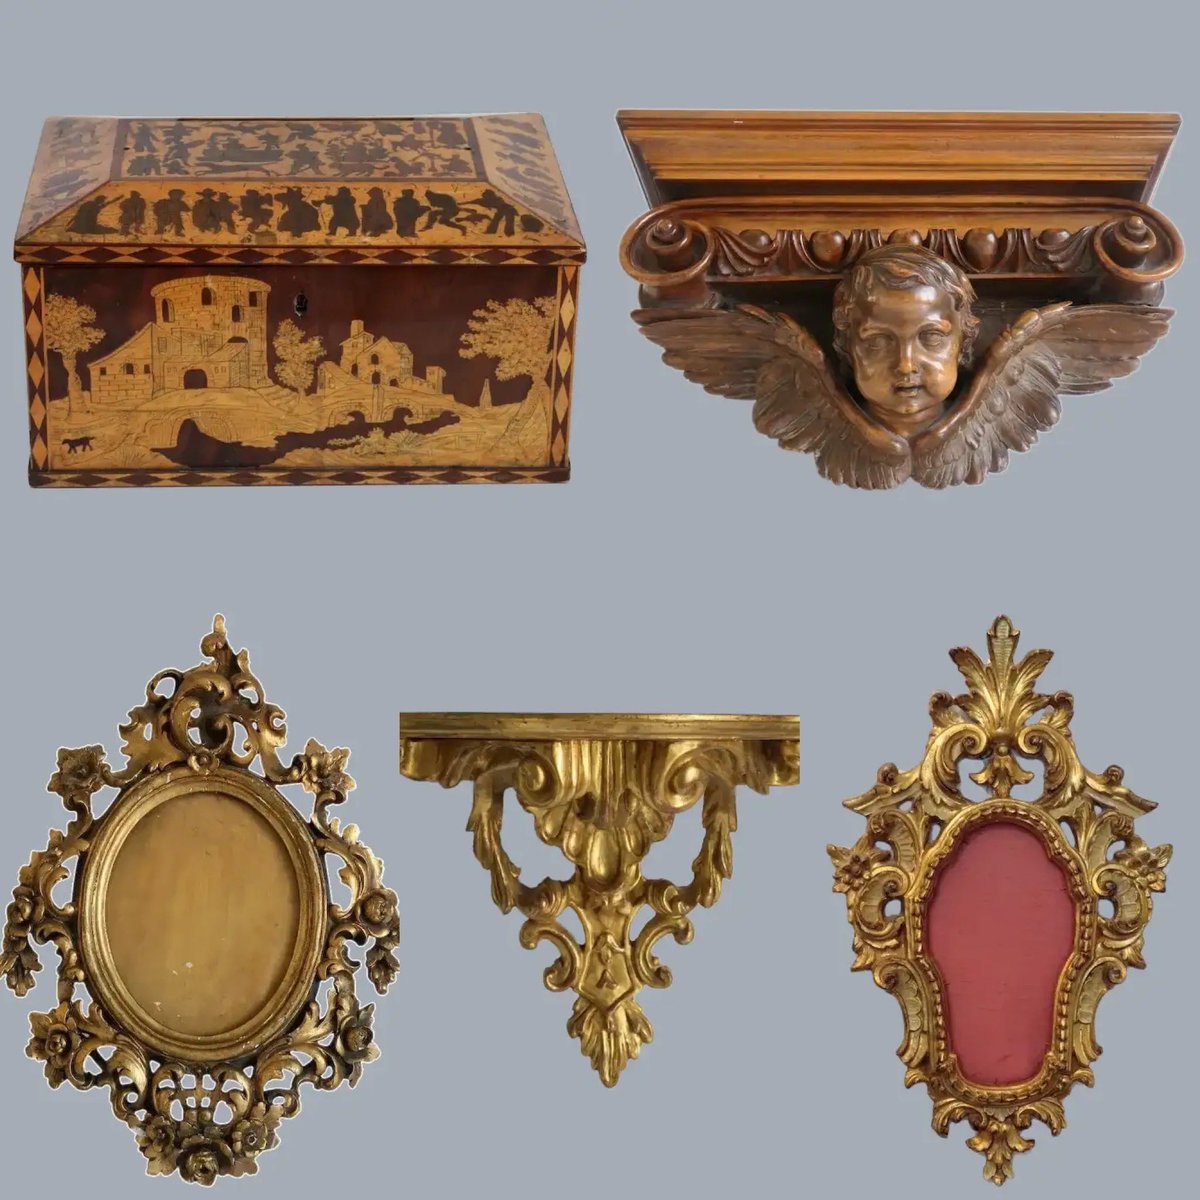 Antiques…..
rubylane.com/shop/chateau
# antiques#antiquesforsale#antiquemirror#antiquebox#